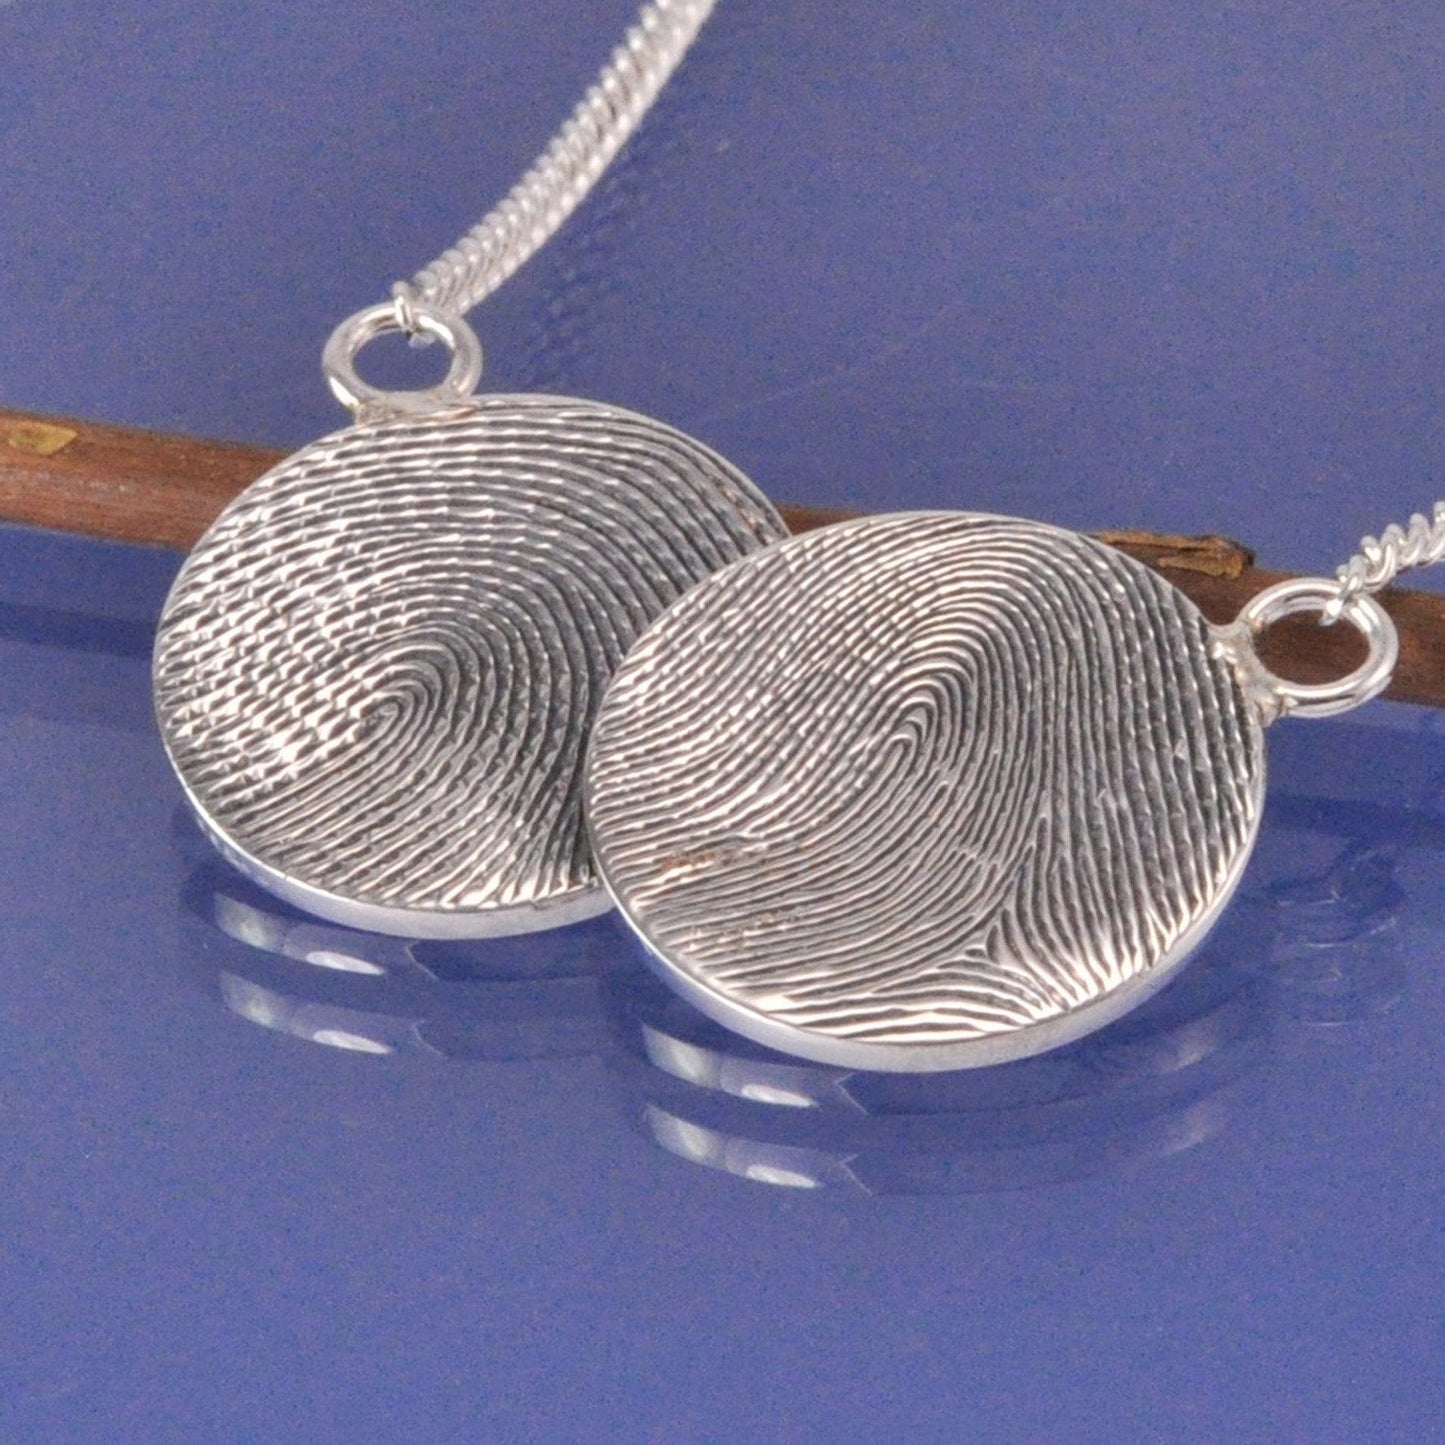 Fingerprint Coin Necklace Pendant by Chris Parry Jewellery